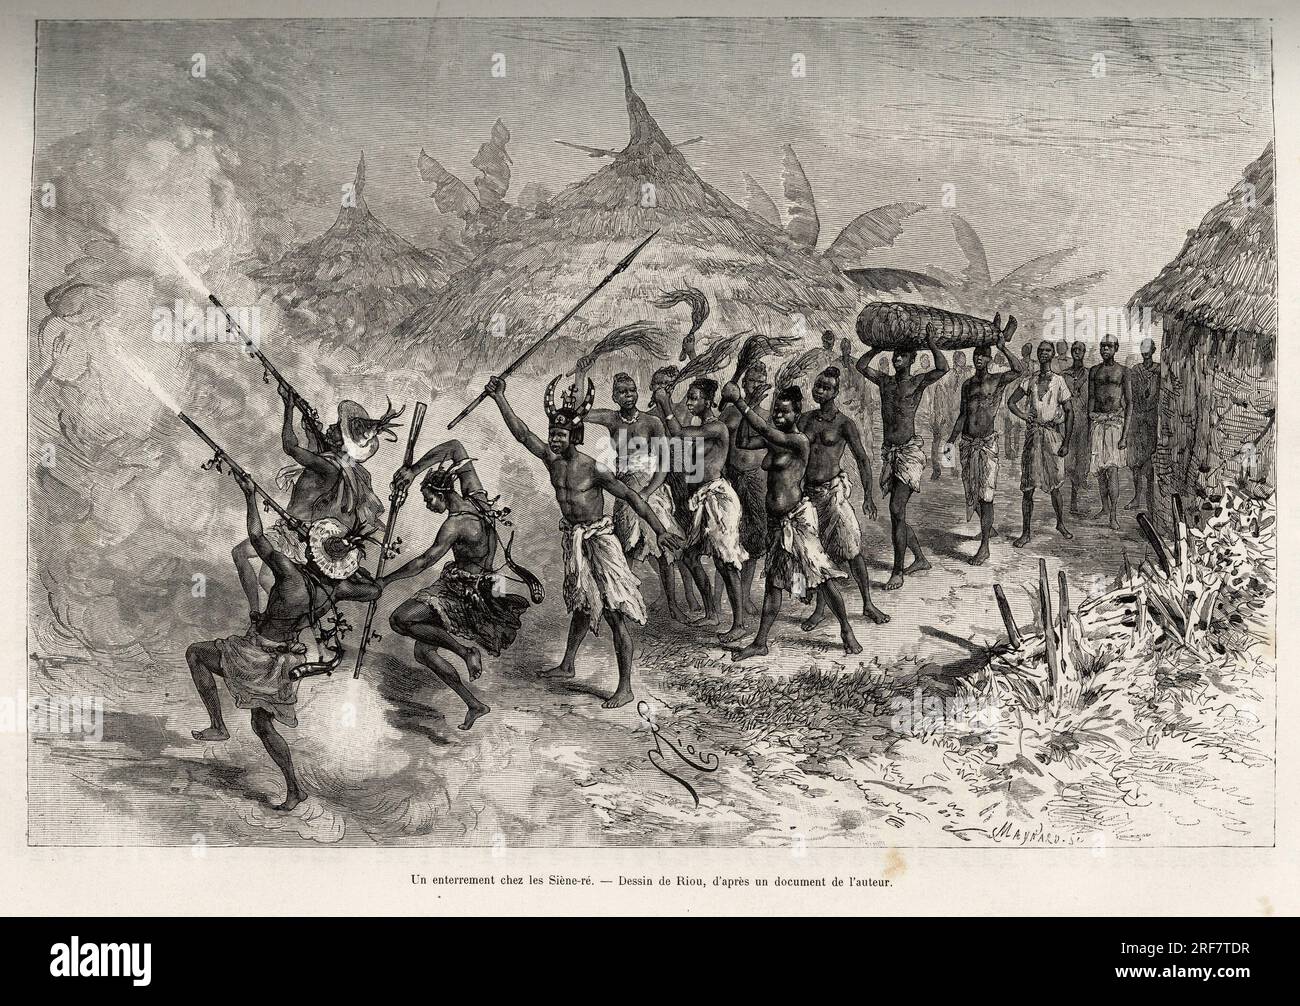 Un enterrement chez les Siene-re (Siene Re), a Fourou (Mali), le cortege funebre traverse le village, mene par les hommes armes de la famille du defunt, suivent les femmes portant des queues de vaches et le corps du defunt, ficele dans une natte. Gravure de Riou, pour illustrer le recit 'Du Niger au  golfe de Guinee' par le capitaine Louis Gustave Binger (1856-1936), en 1887-1889, in Le tour du monde, nouveau journal des voyages, sous la direction de Edouard Charton (1807-1890), 1er semestre 1891, edition Hachette, Paris. Stock Photo